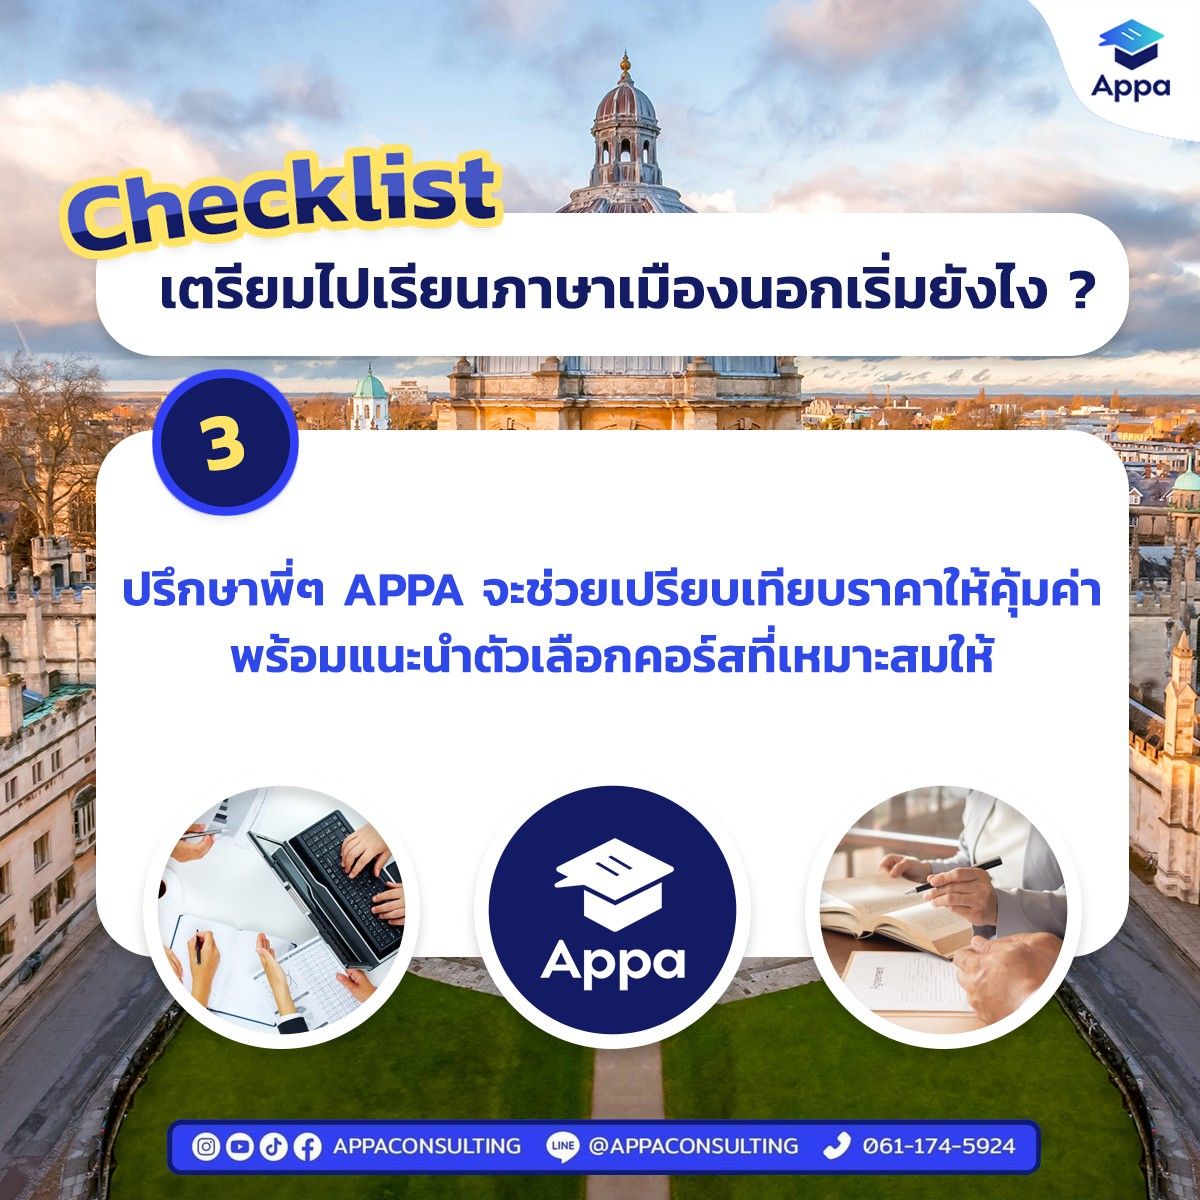 8 Checklist เตรียมตัวไปเรียนภาษาต่างประเทศง่ายๆ ฉบับเด็ก Appa